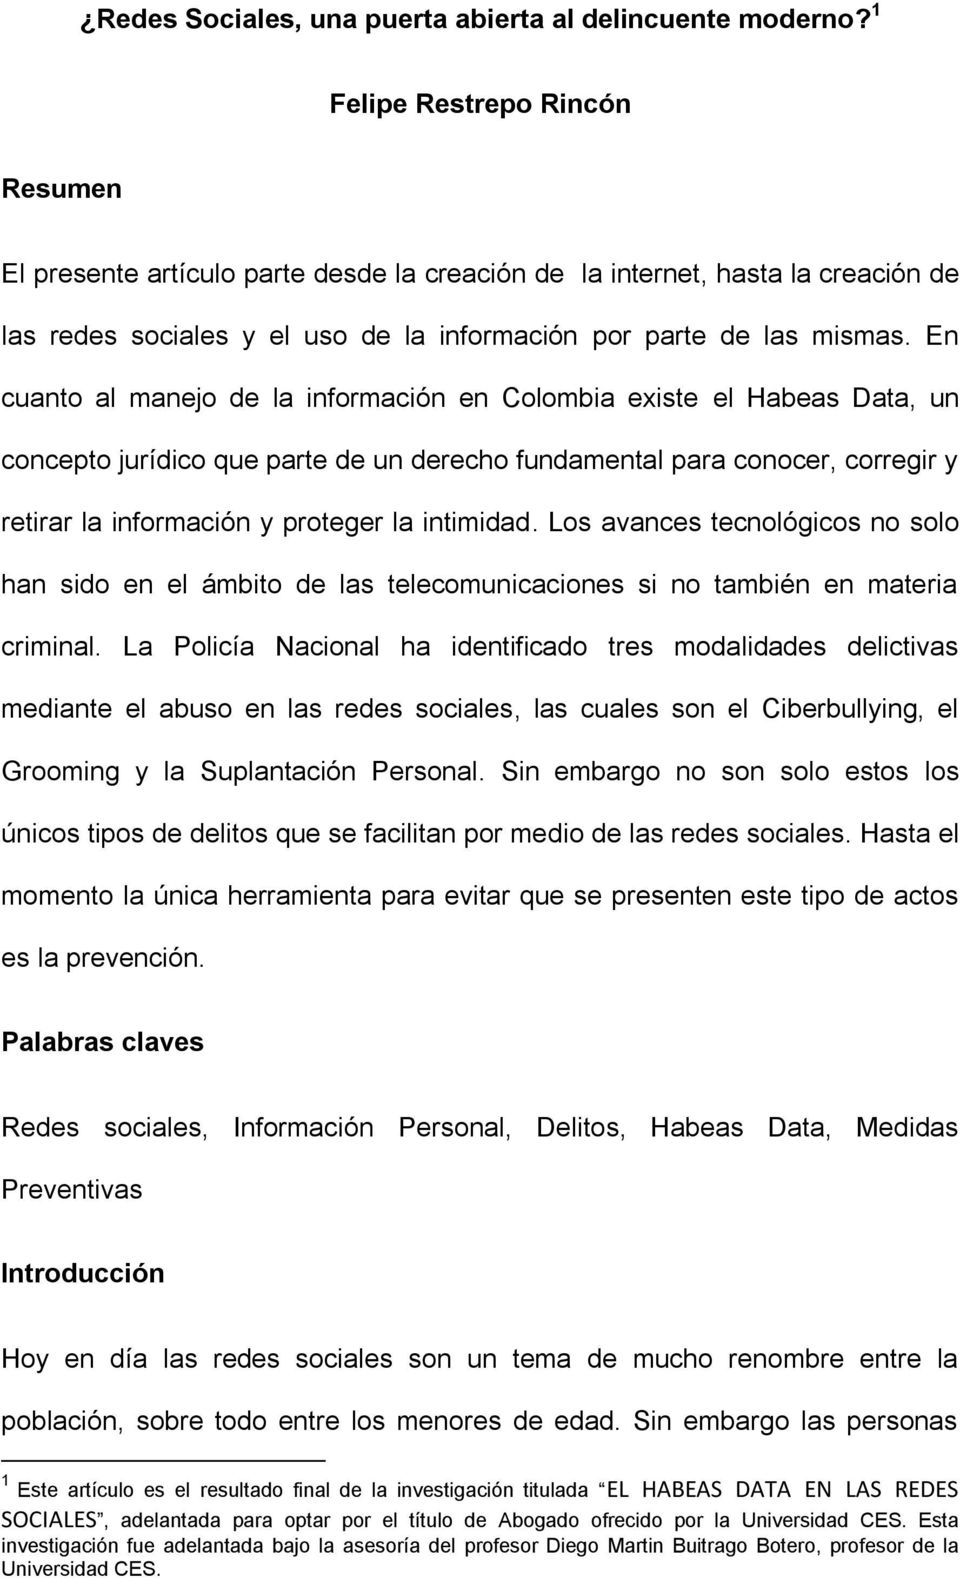 En cuanto al manejo de la información en Colombia existe el Habeas Data, un concepto jurídico que parte de un derecho fundamental para conocer, corregir y retirar la información y proteger la